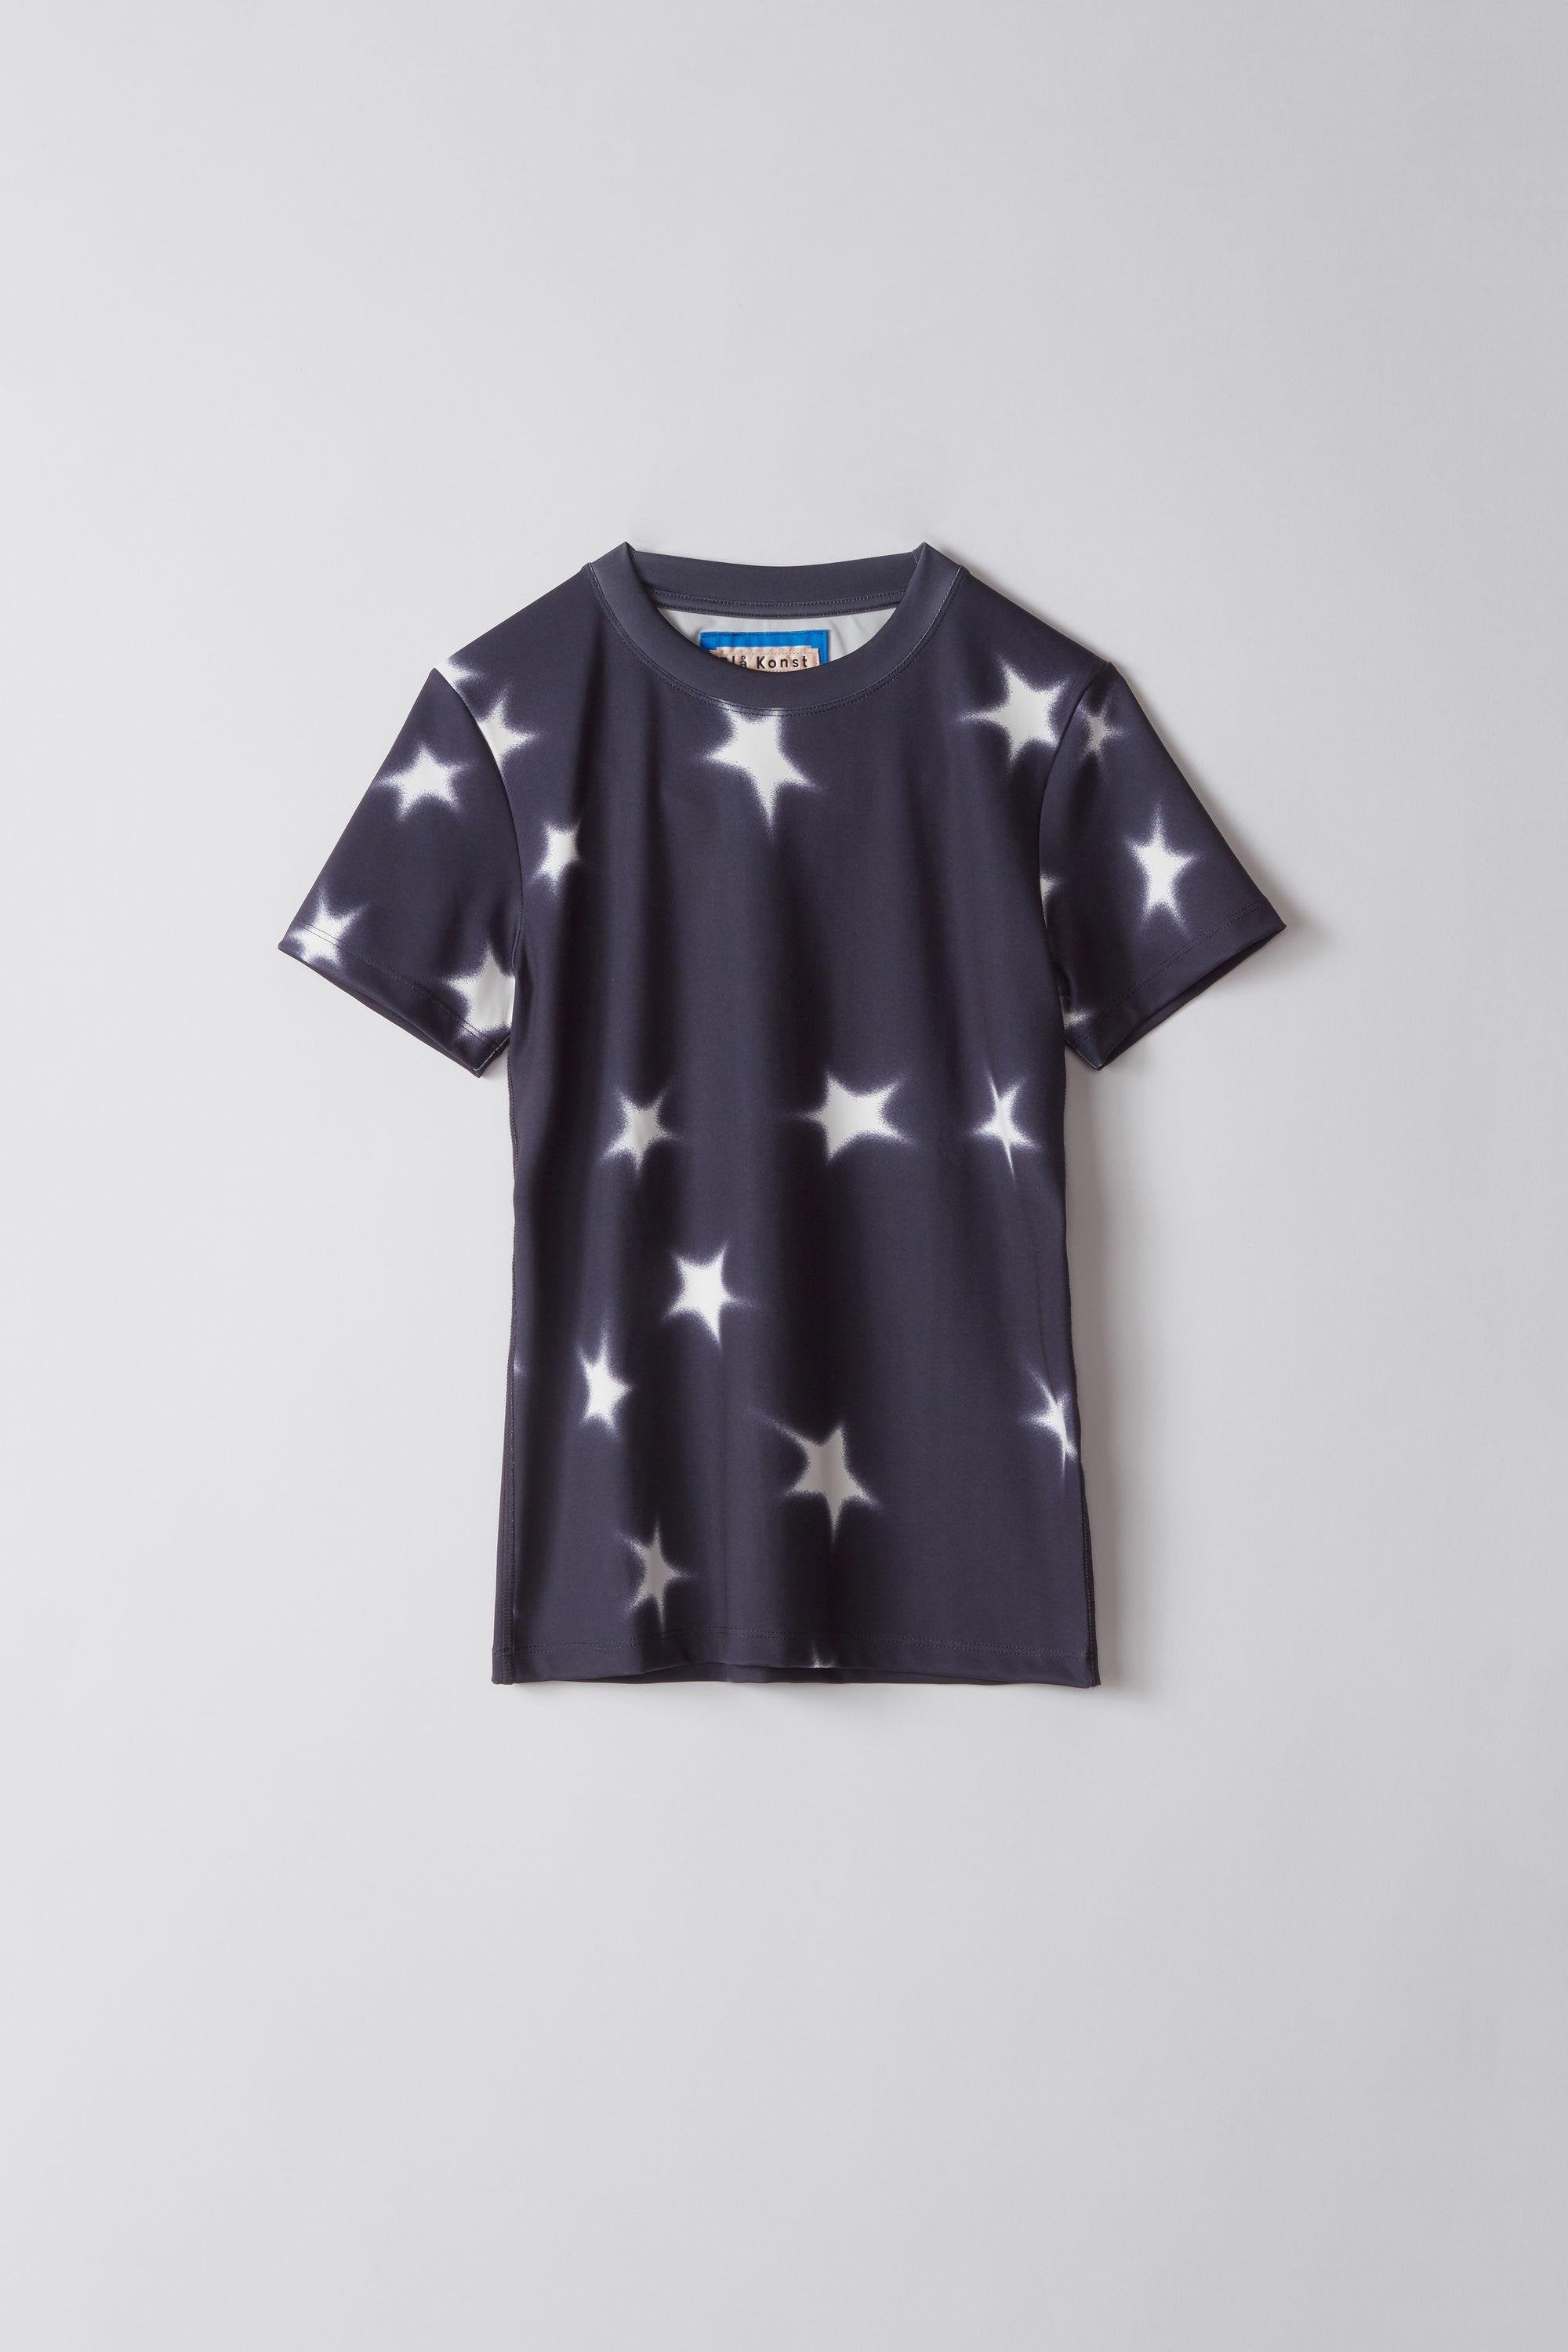 Acne Studios Blå Konst Meow Star T-Shirt - Closet Upgrade